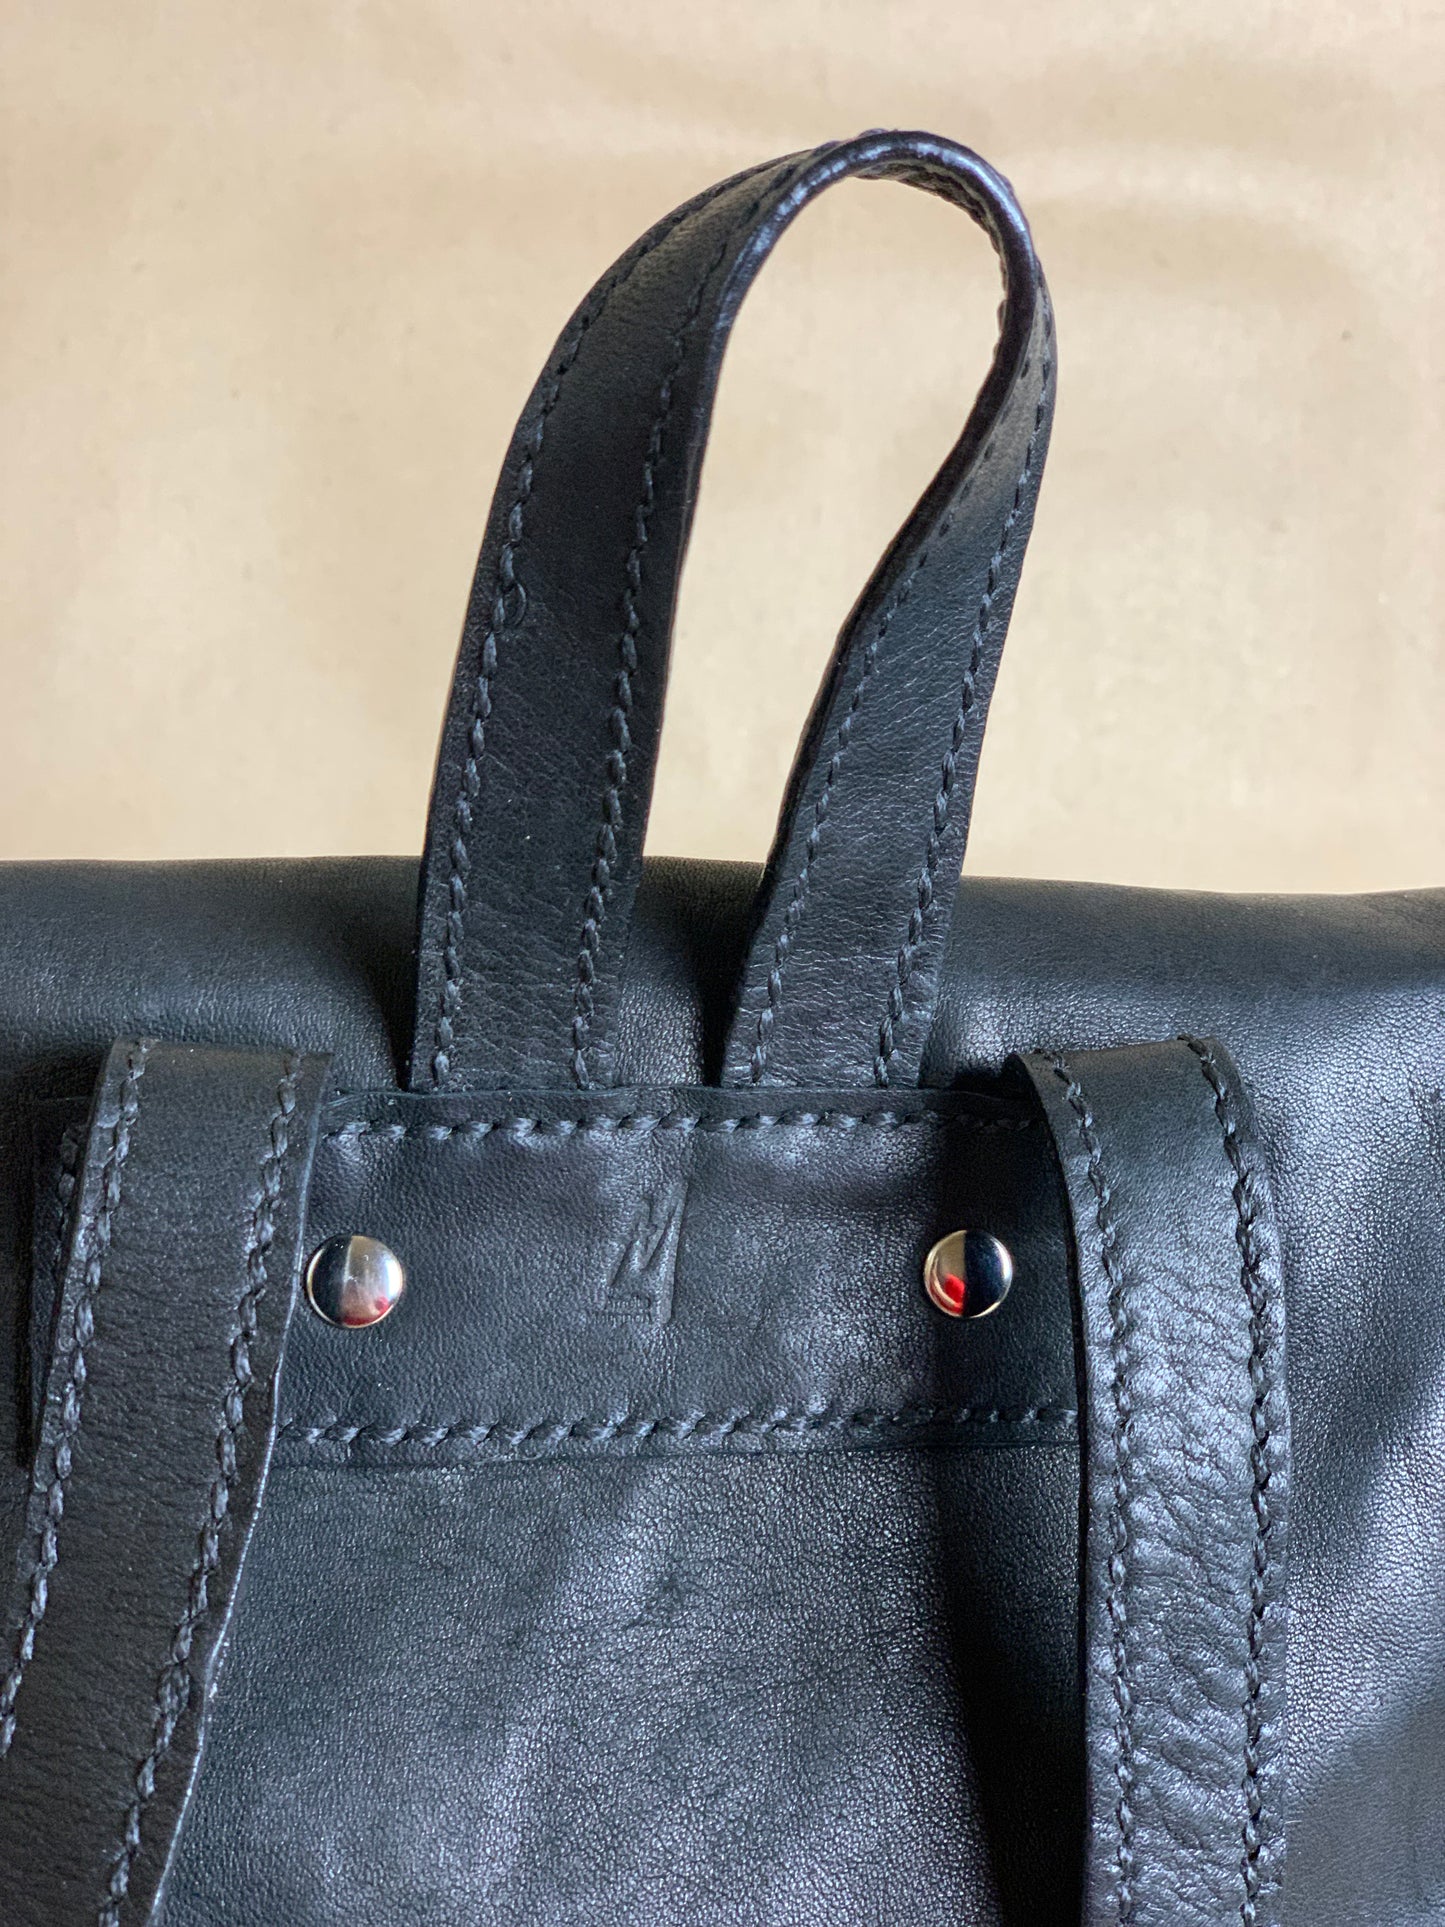 Black Essential Backpack